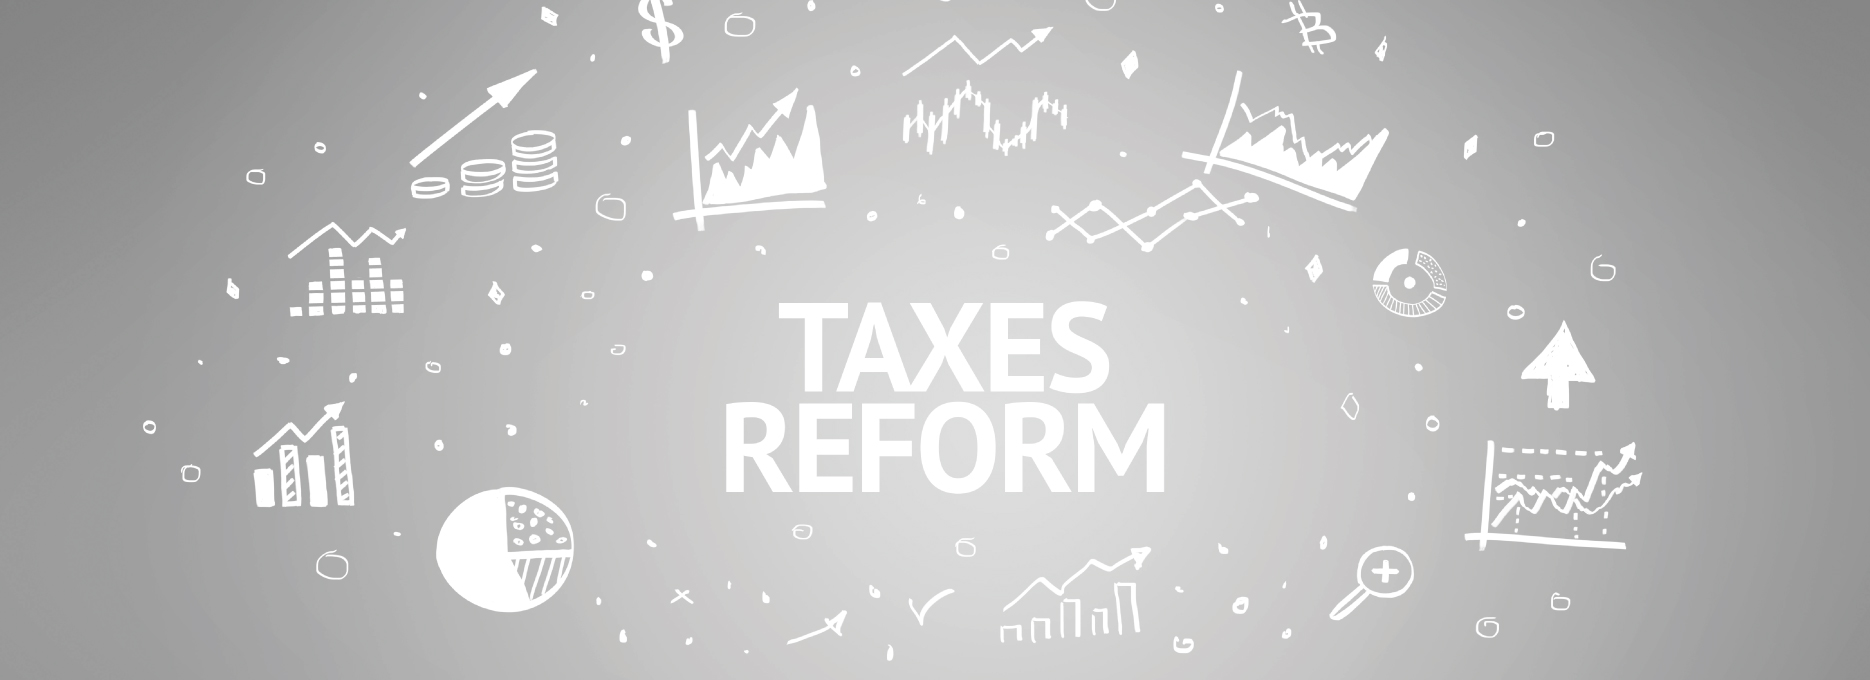 imagen-tendencias-de-fiscalizacion-a-la-luz-de-las-reformas-fiscales-recientes.jpg